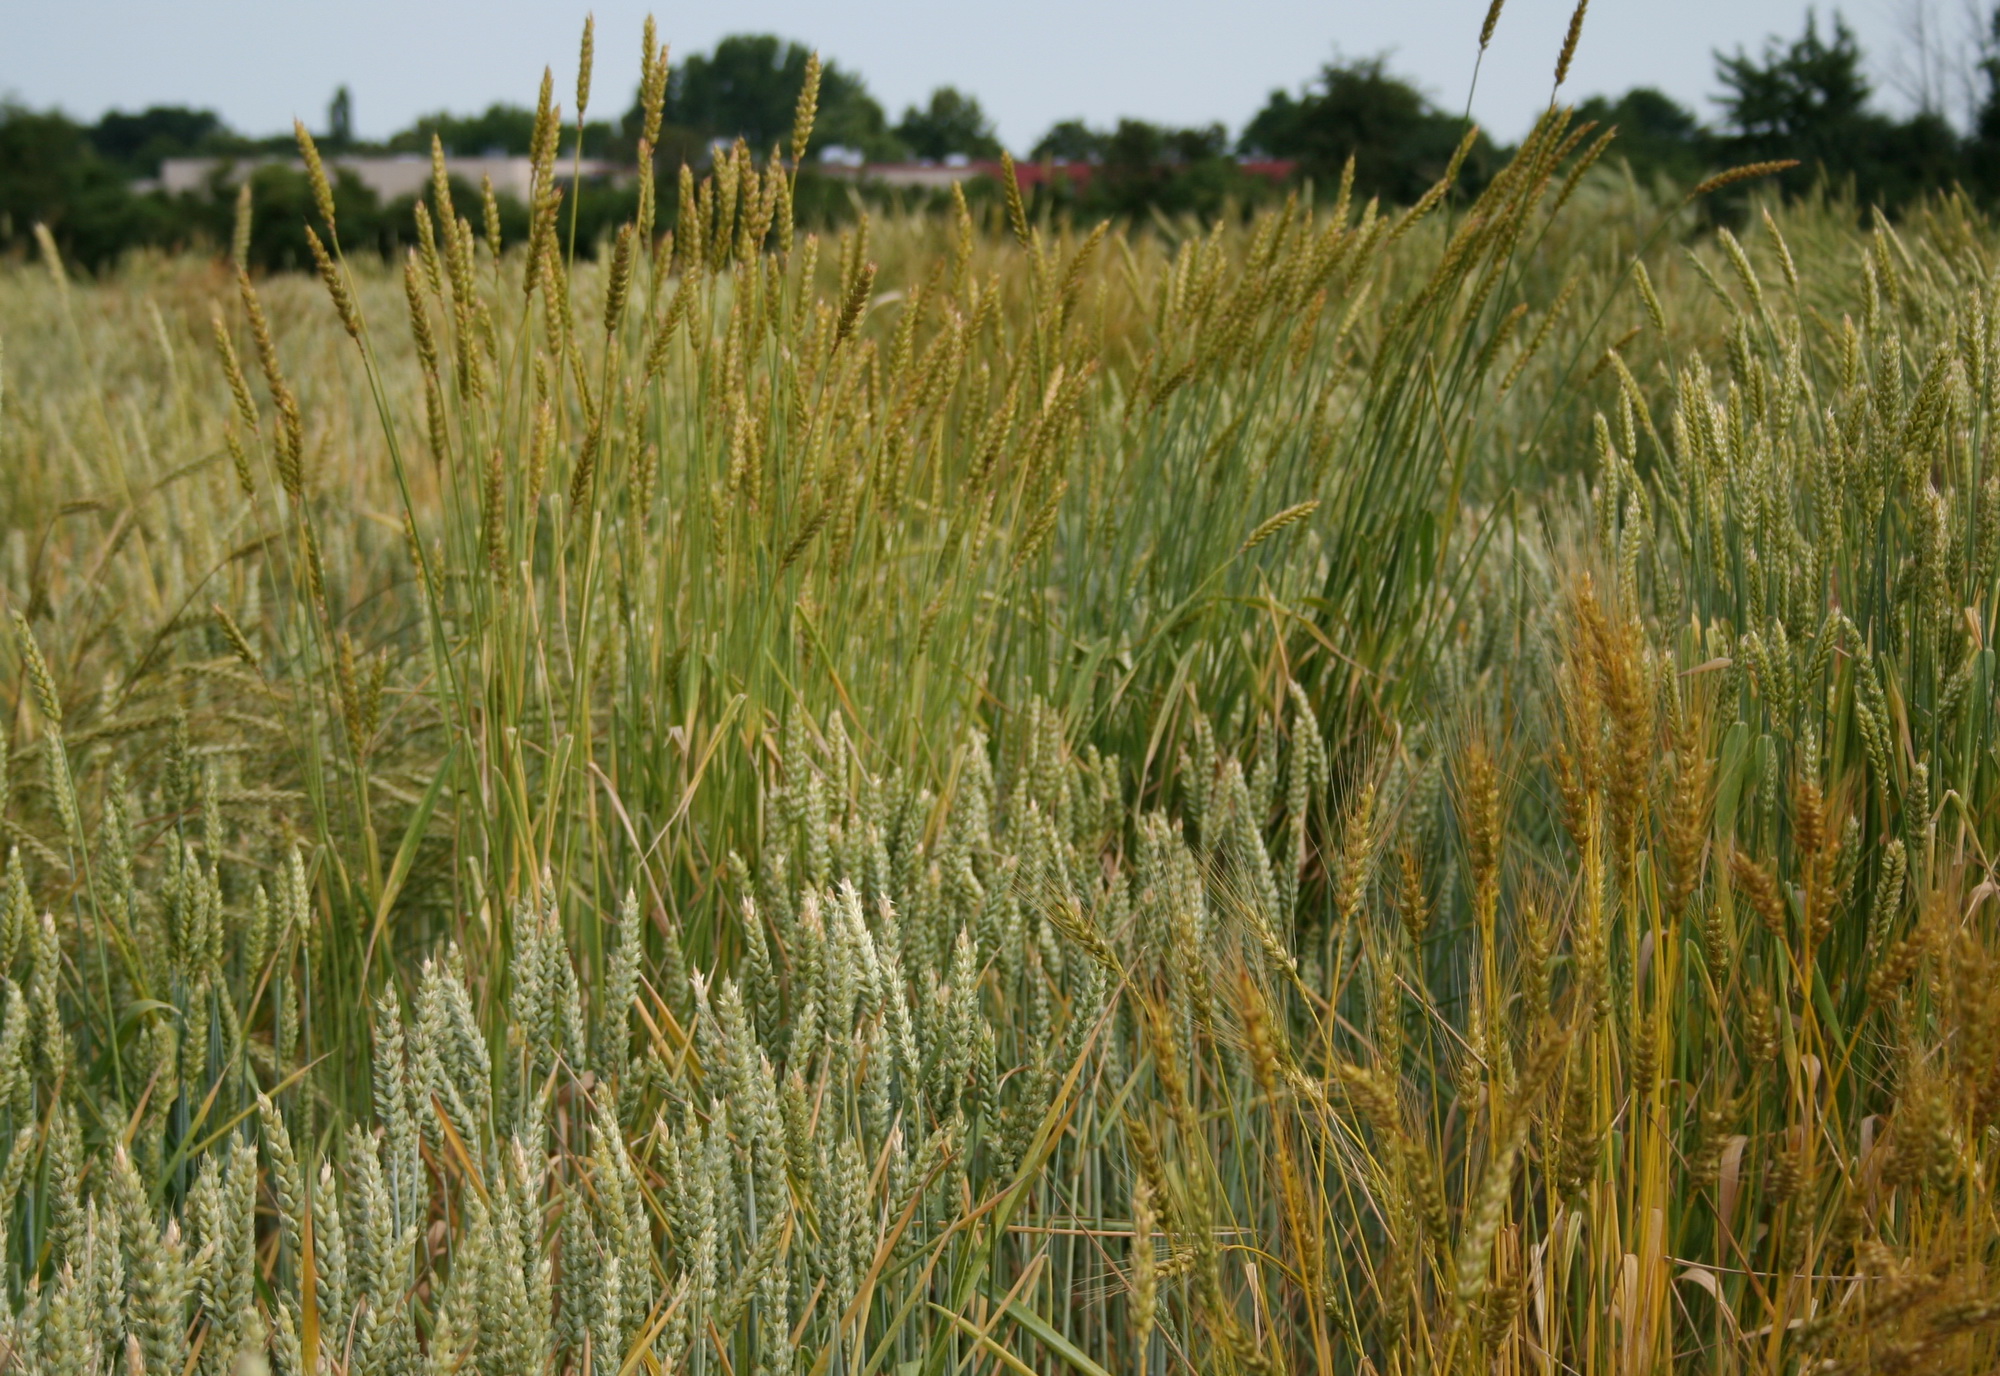 Bild: Weizenverwandte, sog. Pflanzengenetische Ressourcen im Versuchsfeld (Edgar Schliephake/JKI)